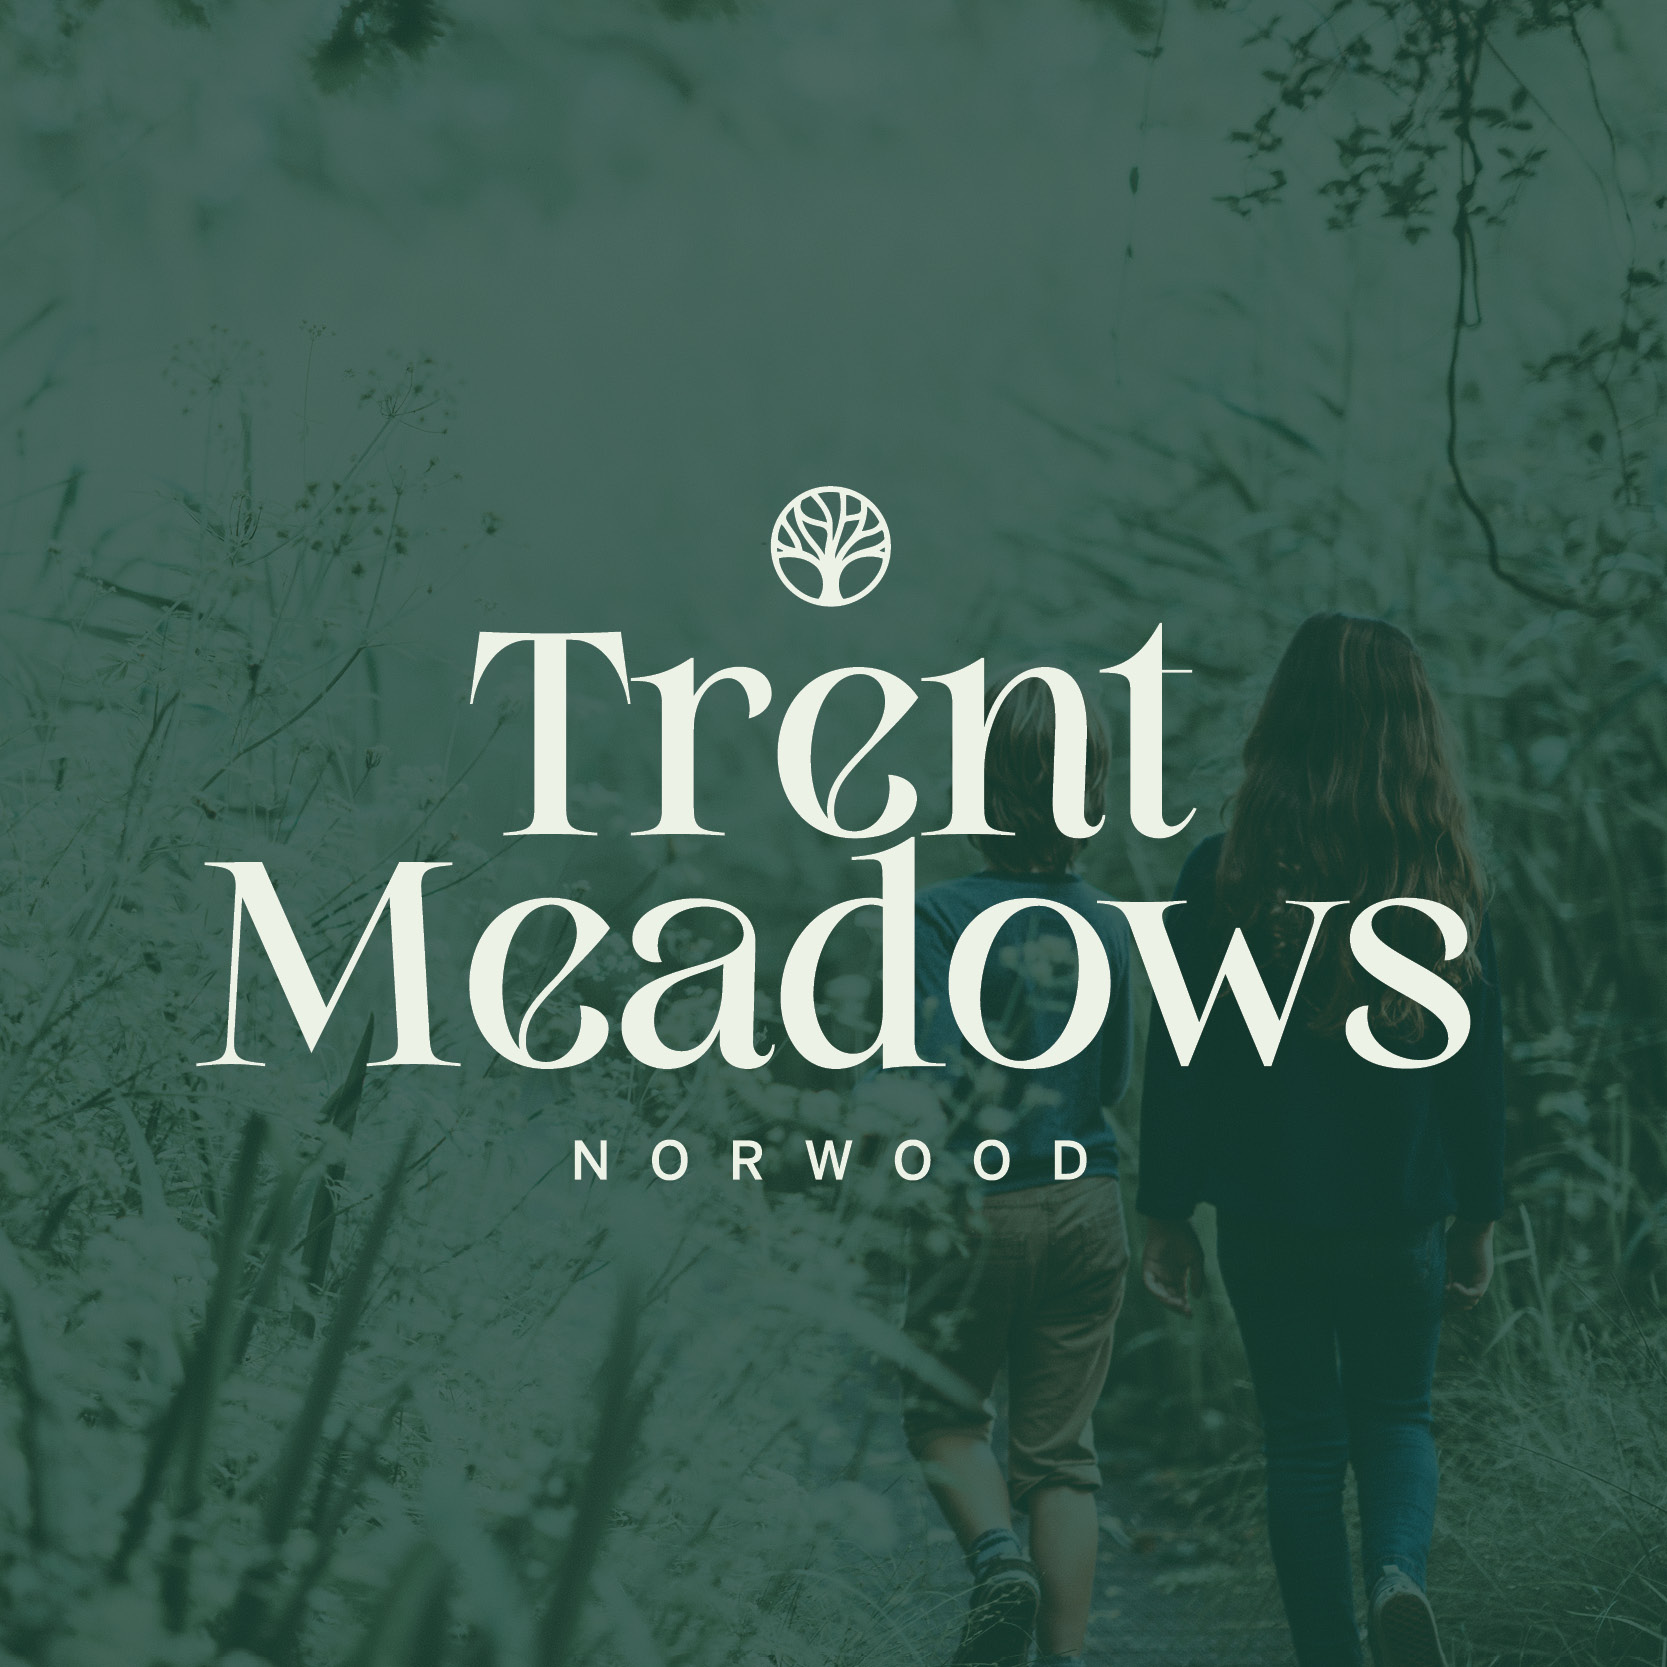 Trent Meadows